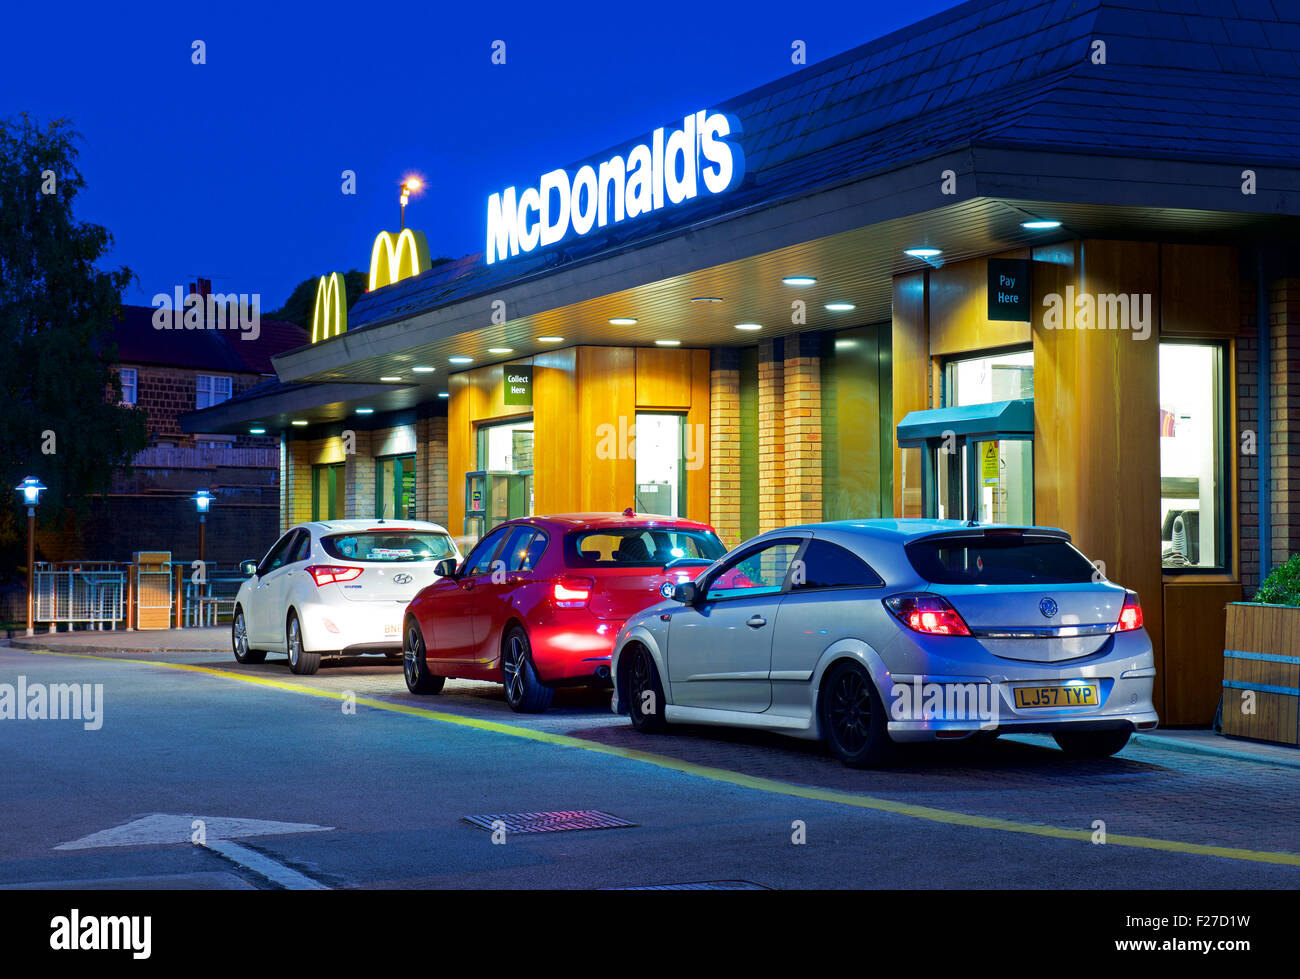 La file de voitures chez McDonald's restaurant drive-in, de nuit, en Angleterre, Royaume-Uni Banque D'Images